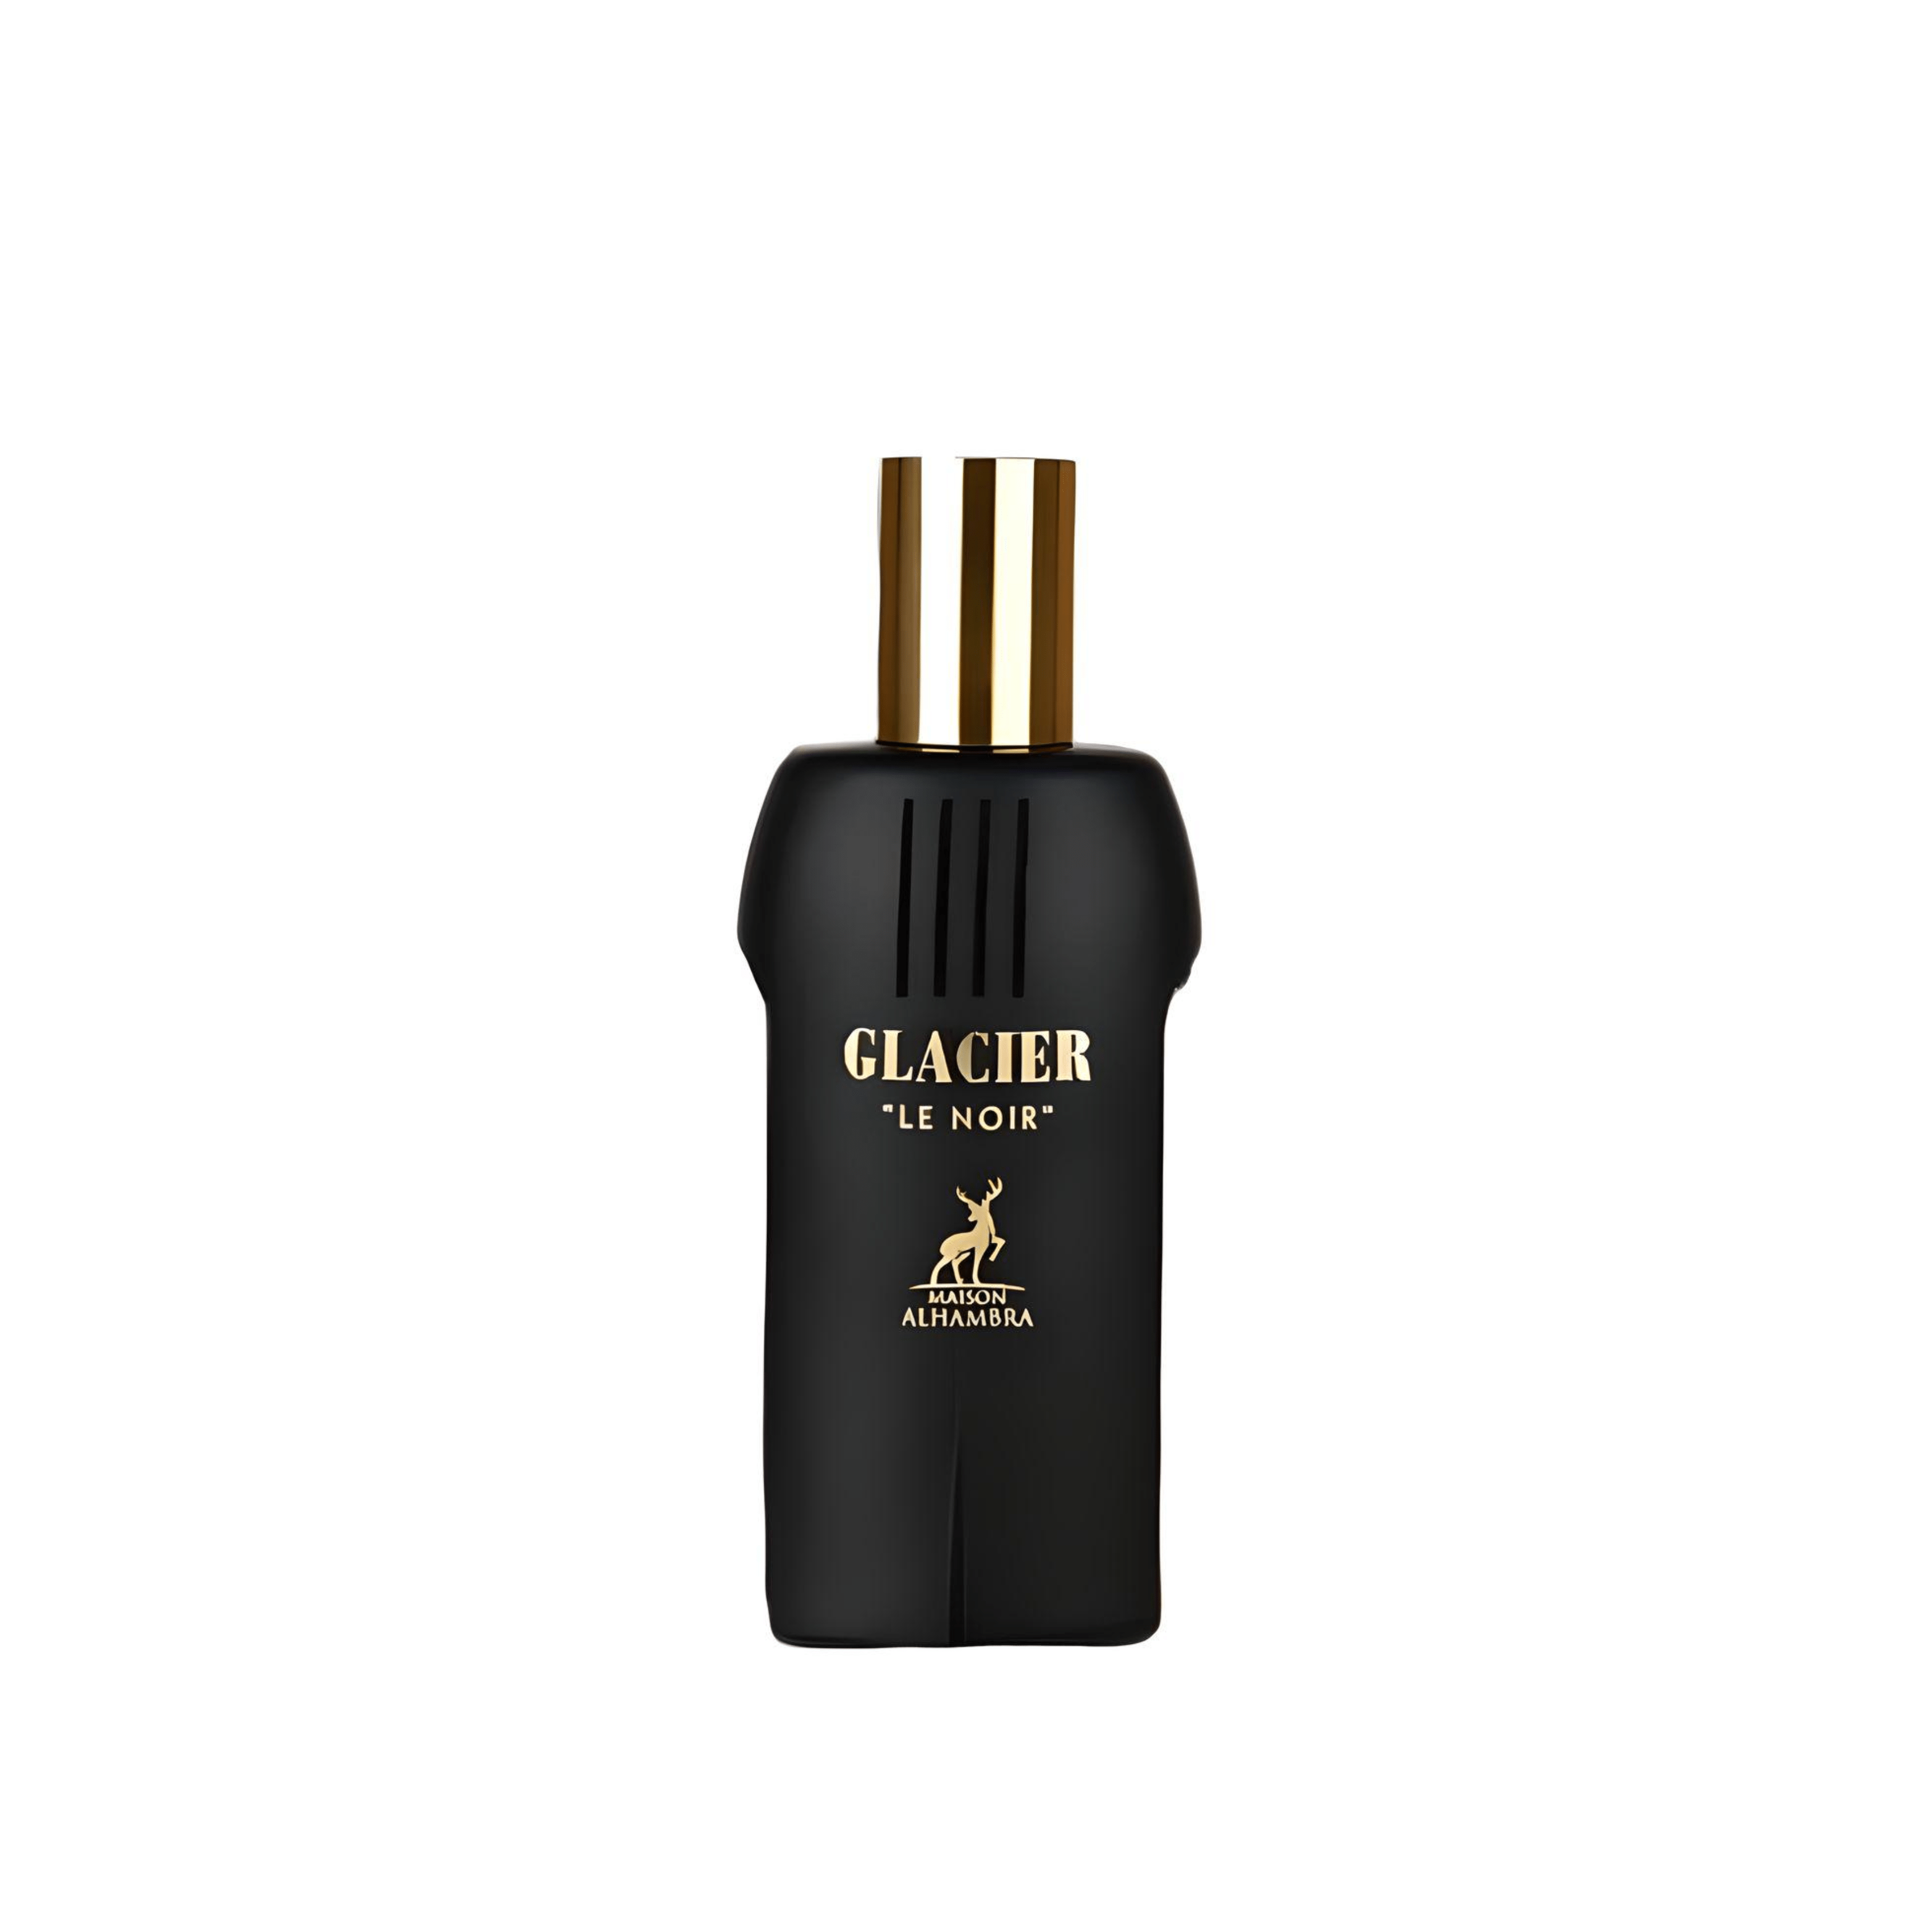 Glacier Le Noir Perfume / Eau De Parfum By Maison Alhambra / Lattafa (Inspired By Le Male Le Parfum - Jpg)